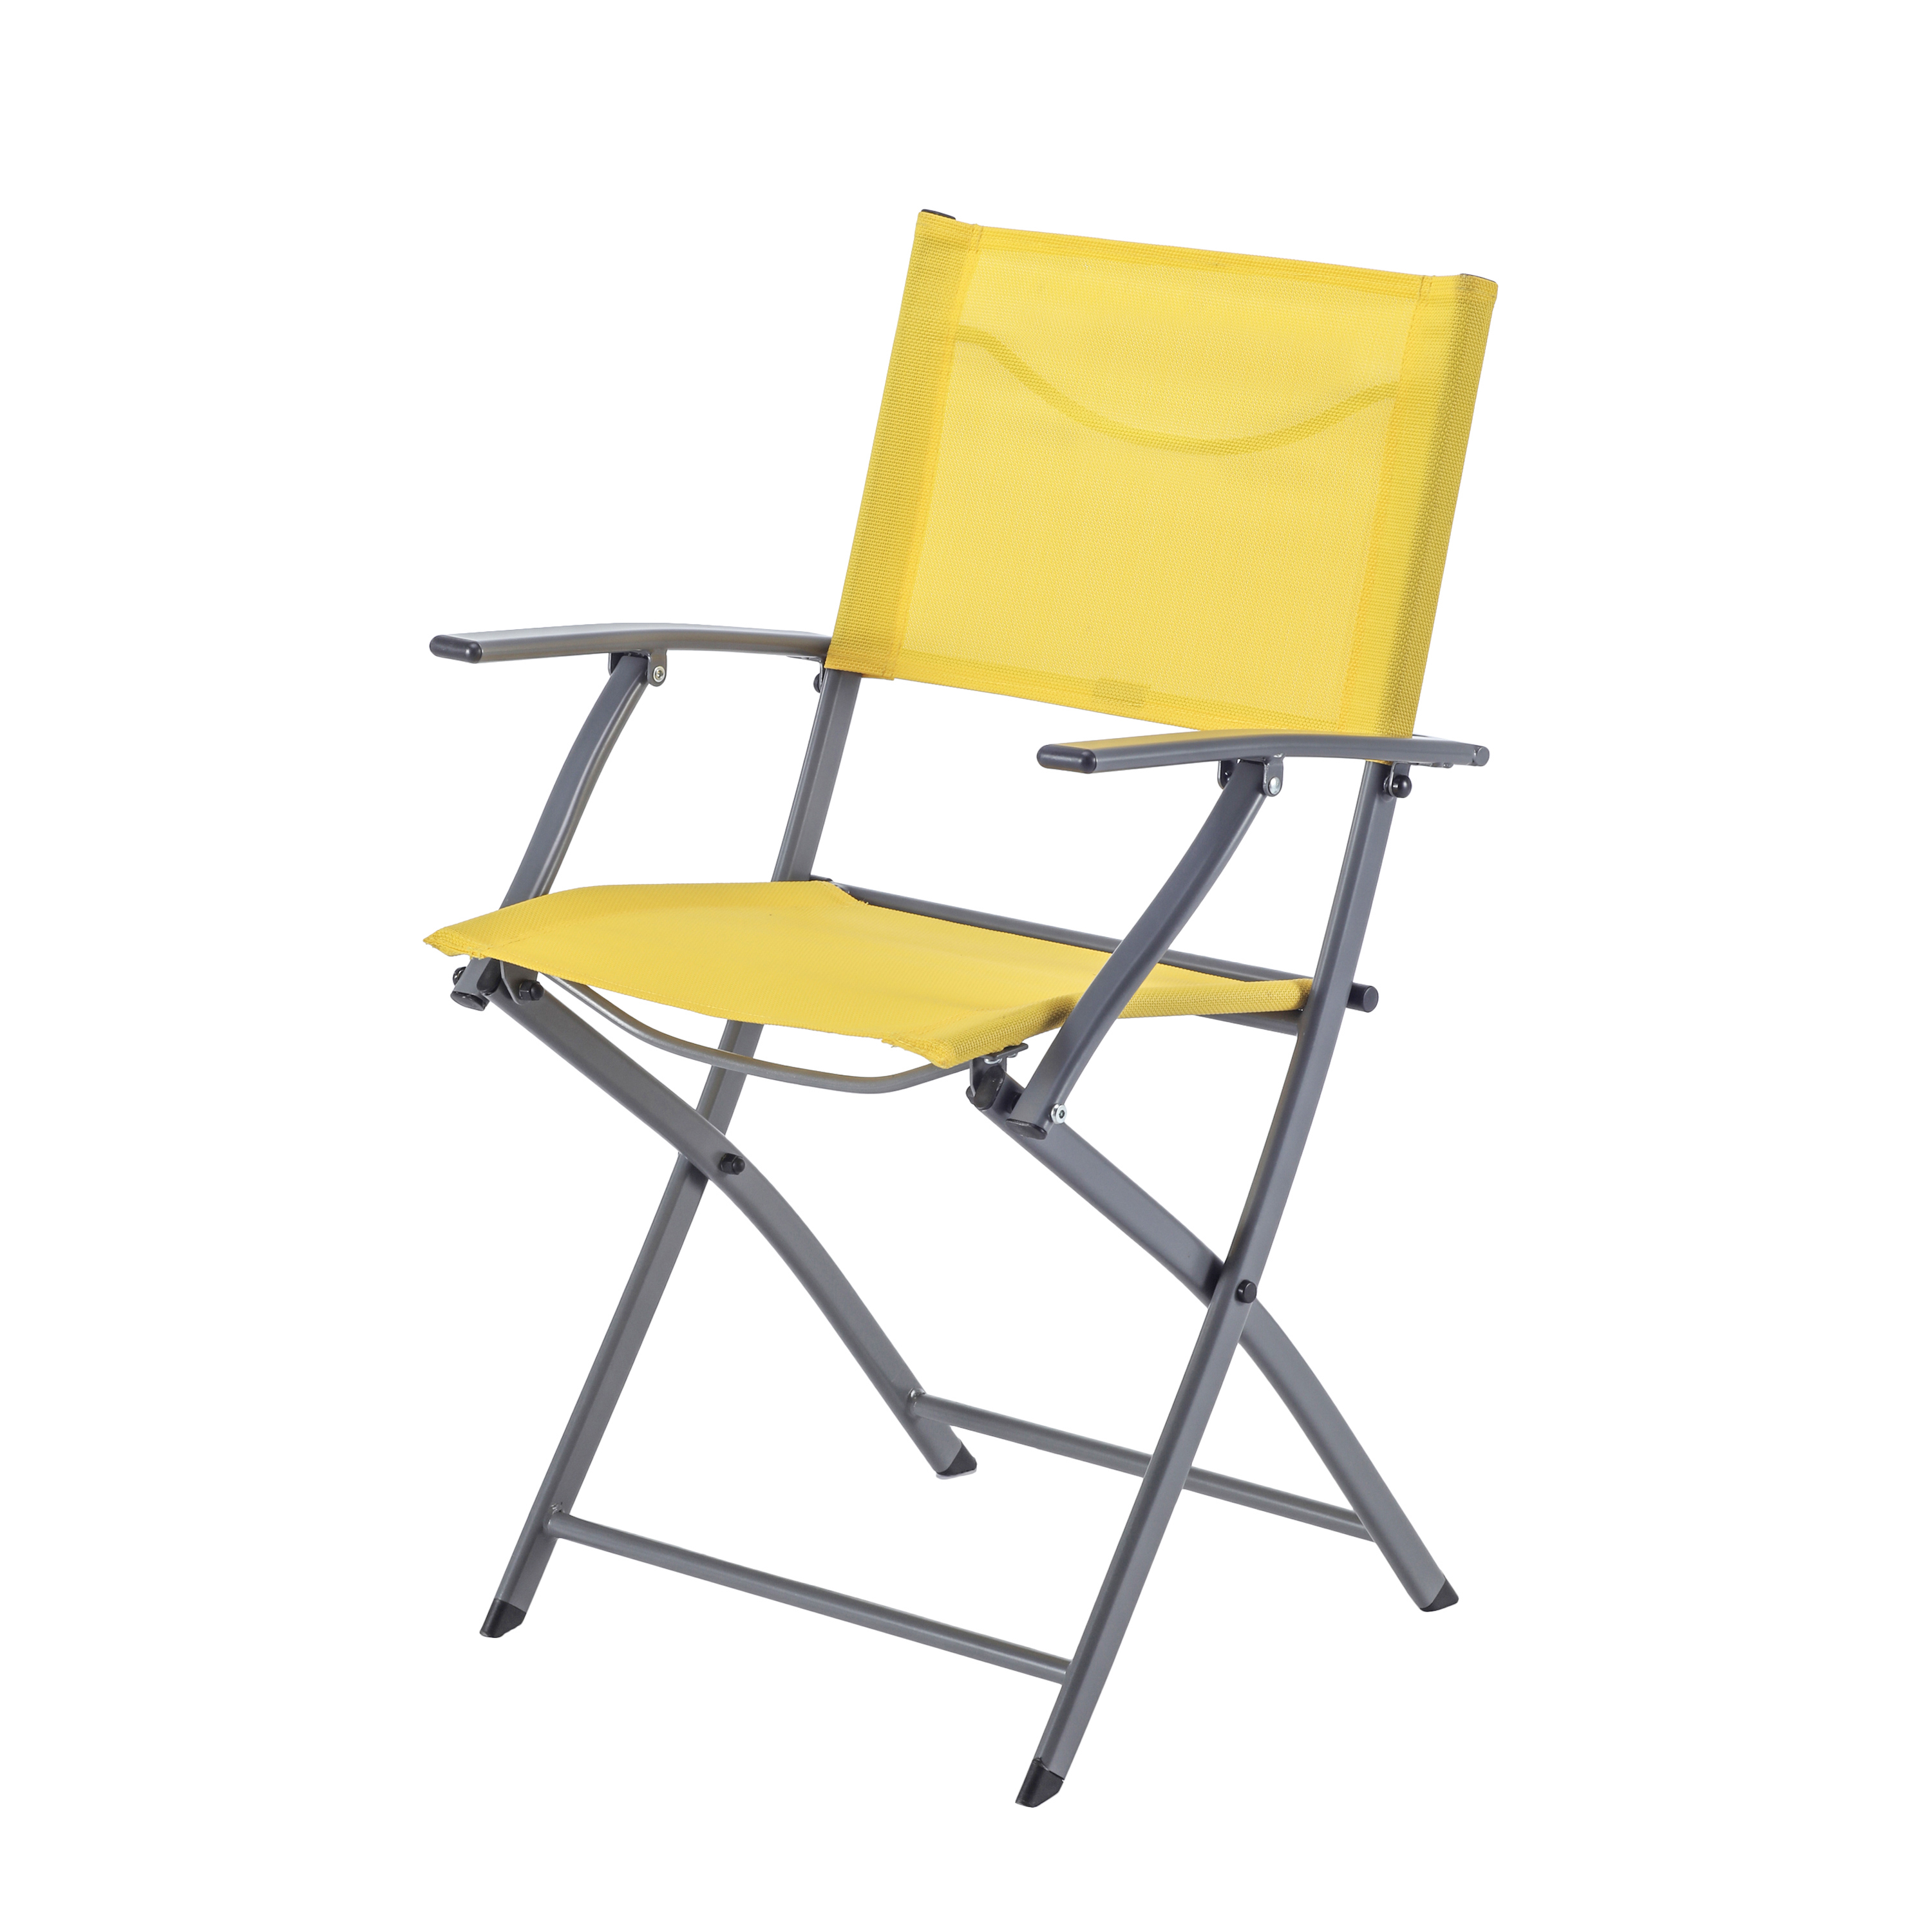 Леруа складные стулья. Кресло Naterial Emys Origami складное 54х52х83 см сталь желтый. Стул Naterial Emys Origami складной 52х42х83 см сталь голубой. Стул Naterial Emys Origami складной 52х42х83 сталь с подлокотниками. Складной стул Naterial Emys.